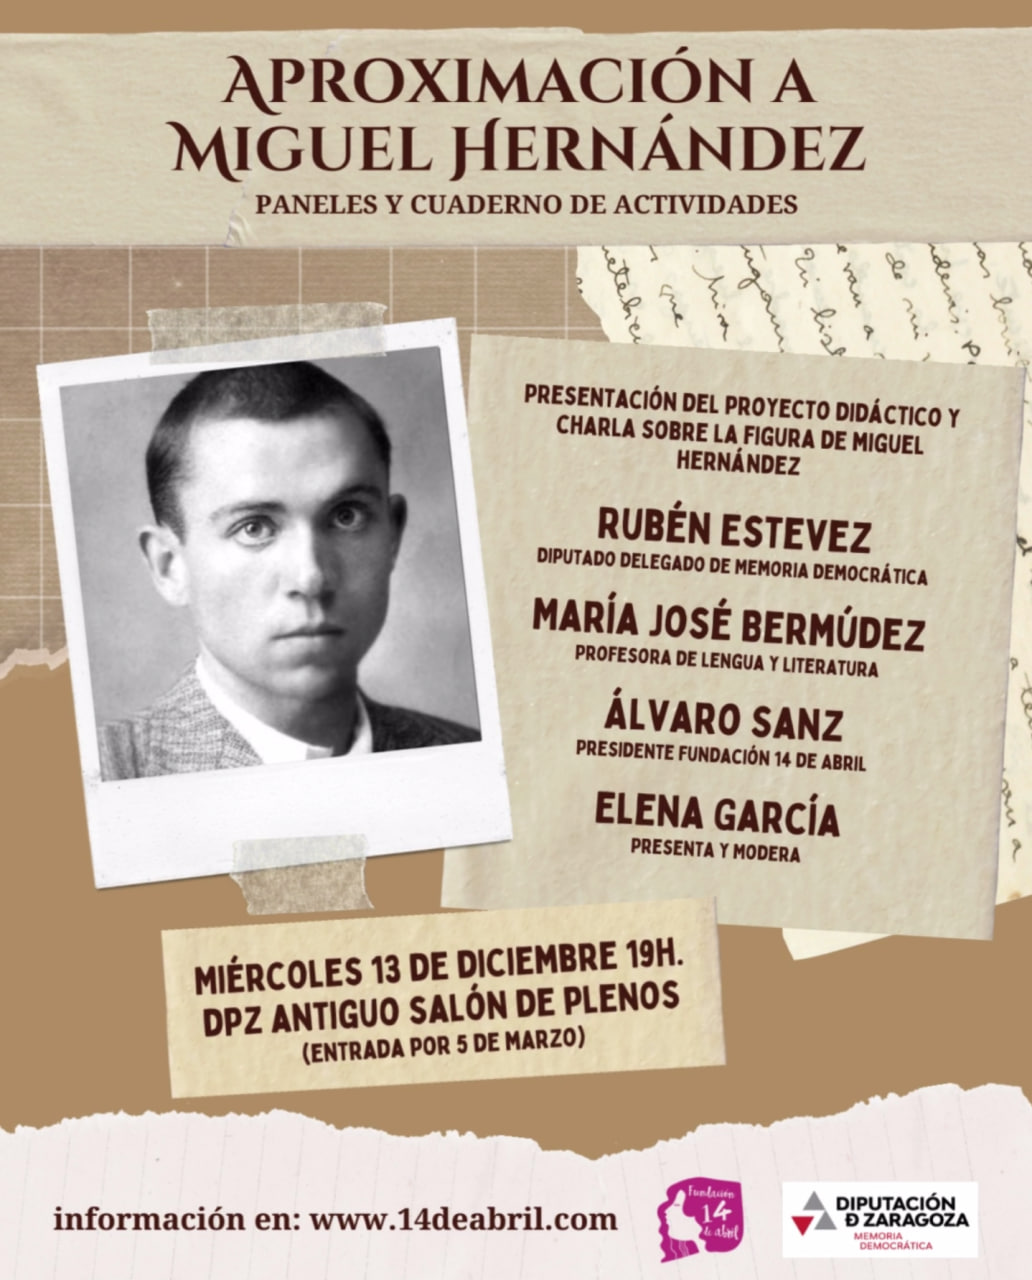 Presentación material didáctico sobre Miguel Hernández